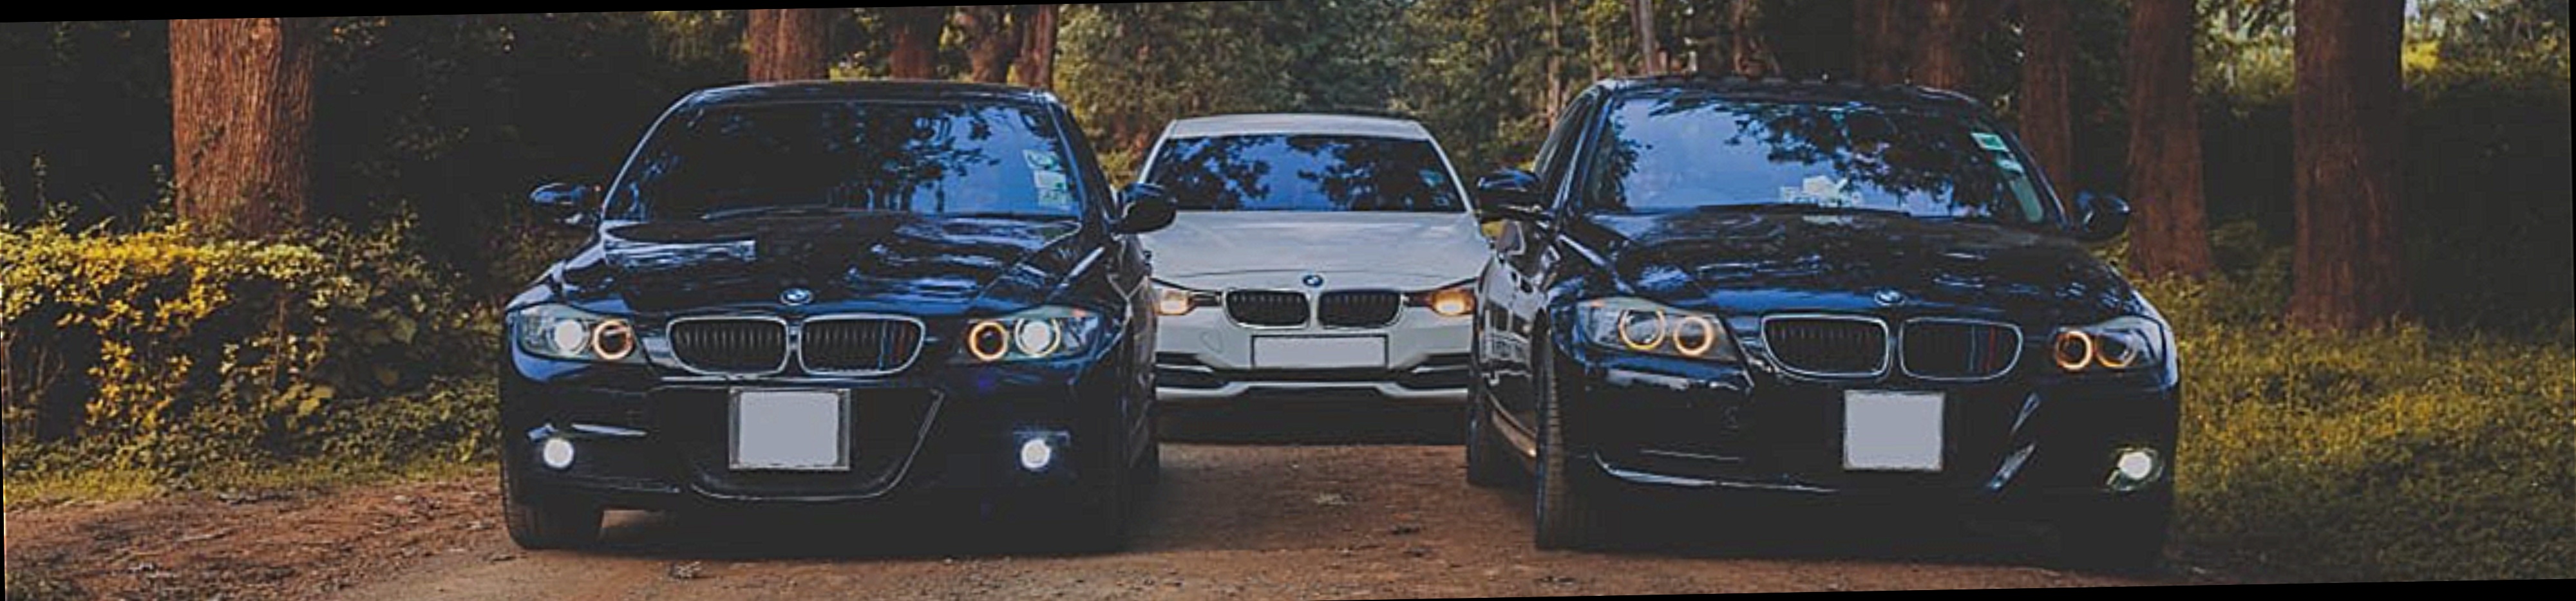 Home - BMW Owners Club Kenya